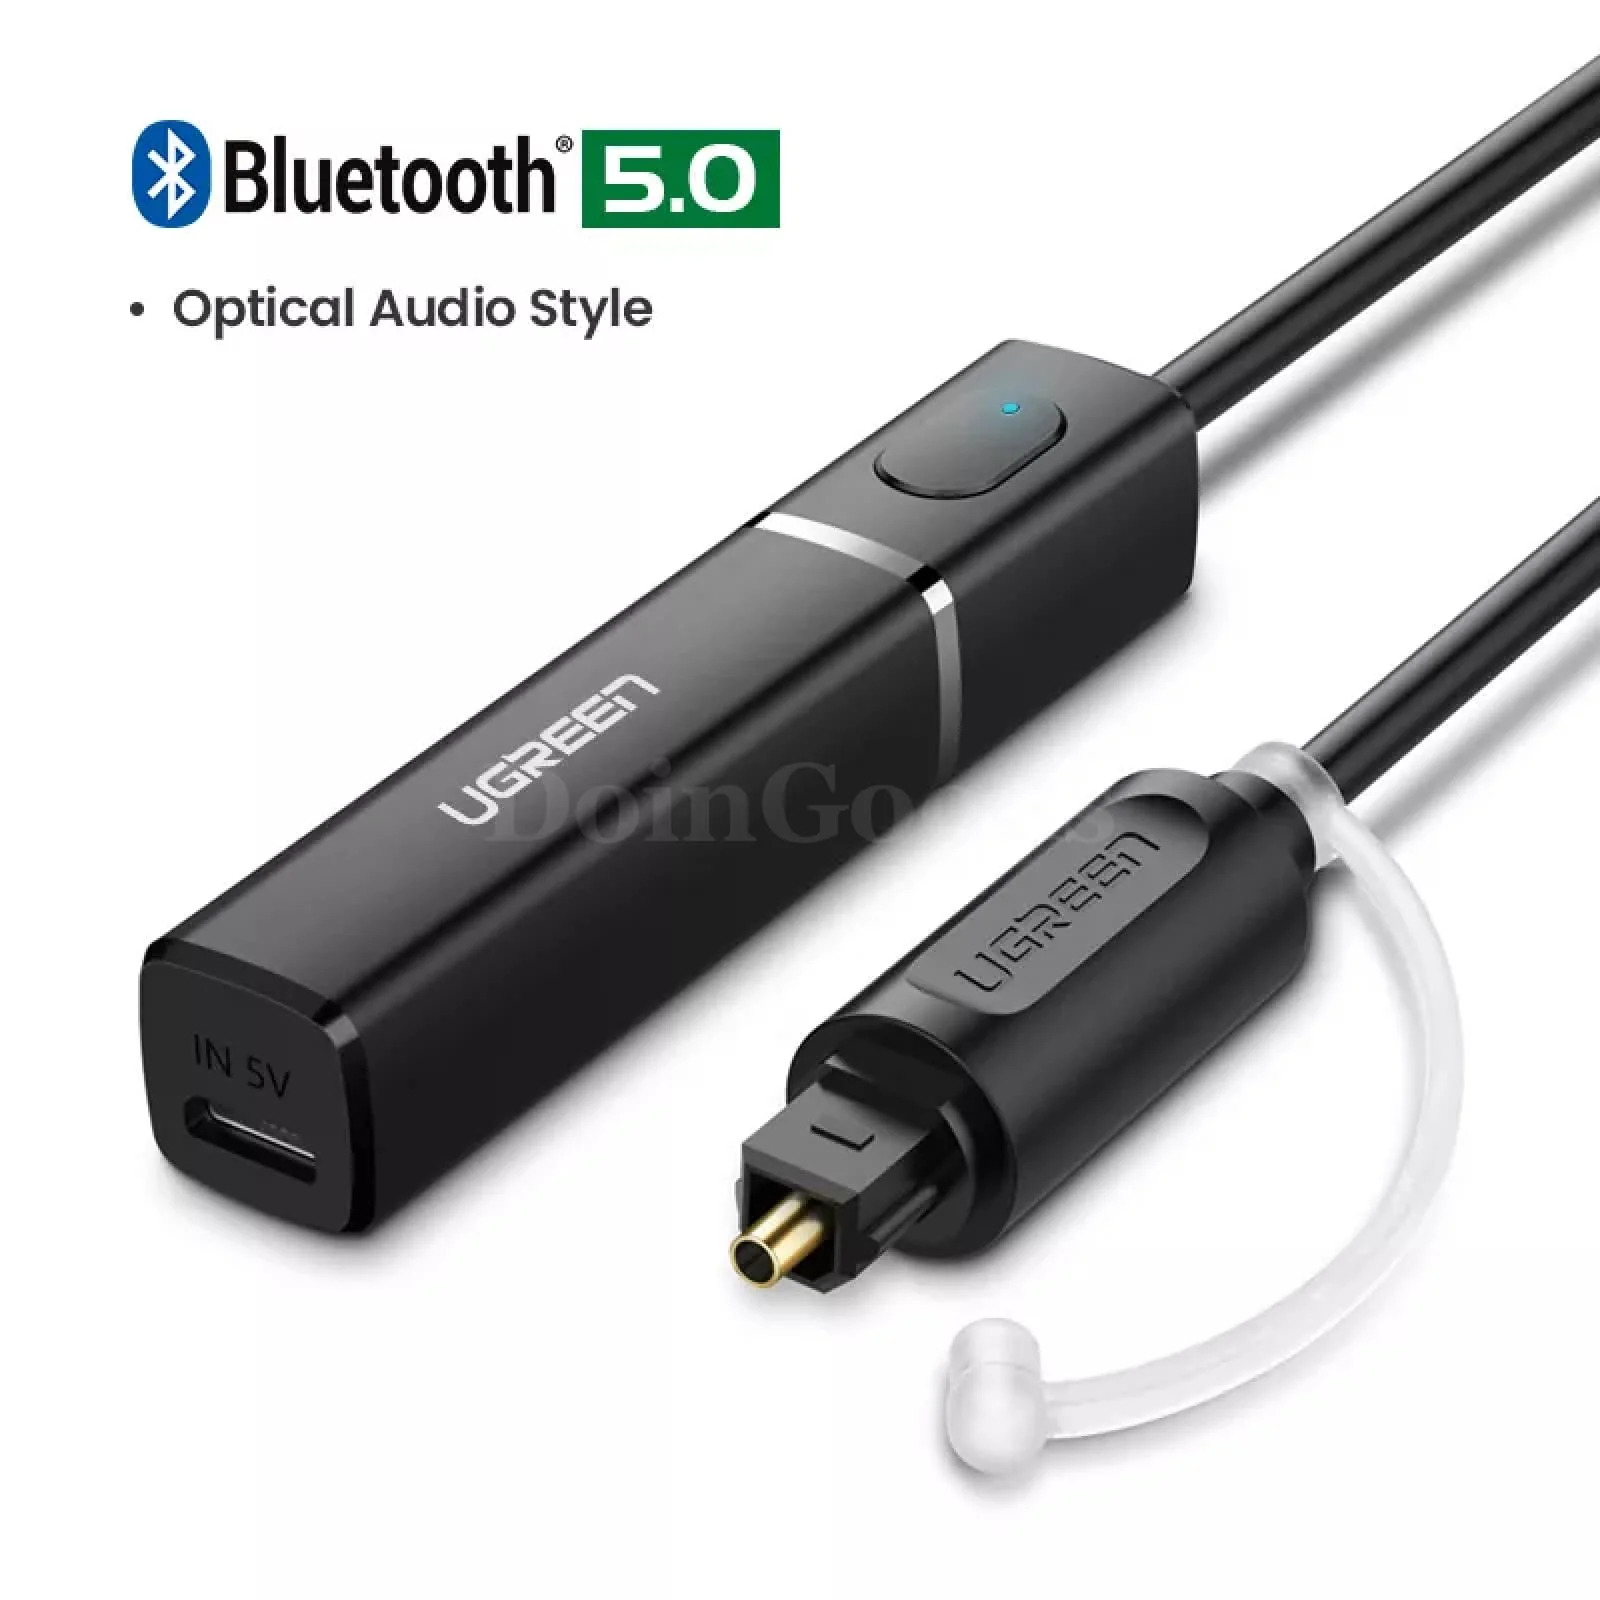 Ugreen Bluetooth 5.0 Transmitter APTX LL TV PC Headphone, Optical SPDIF Adapter